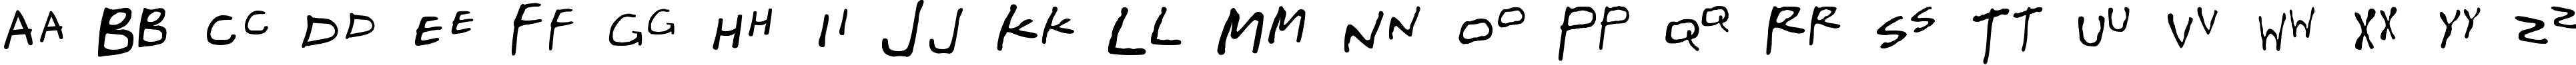 Пример написания английского алфавита шрифтом Gregor Miller's Friends Font